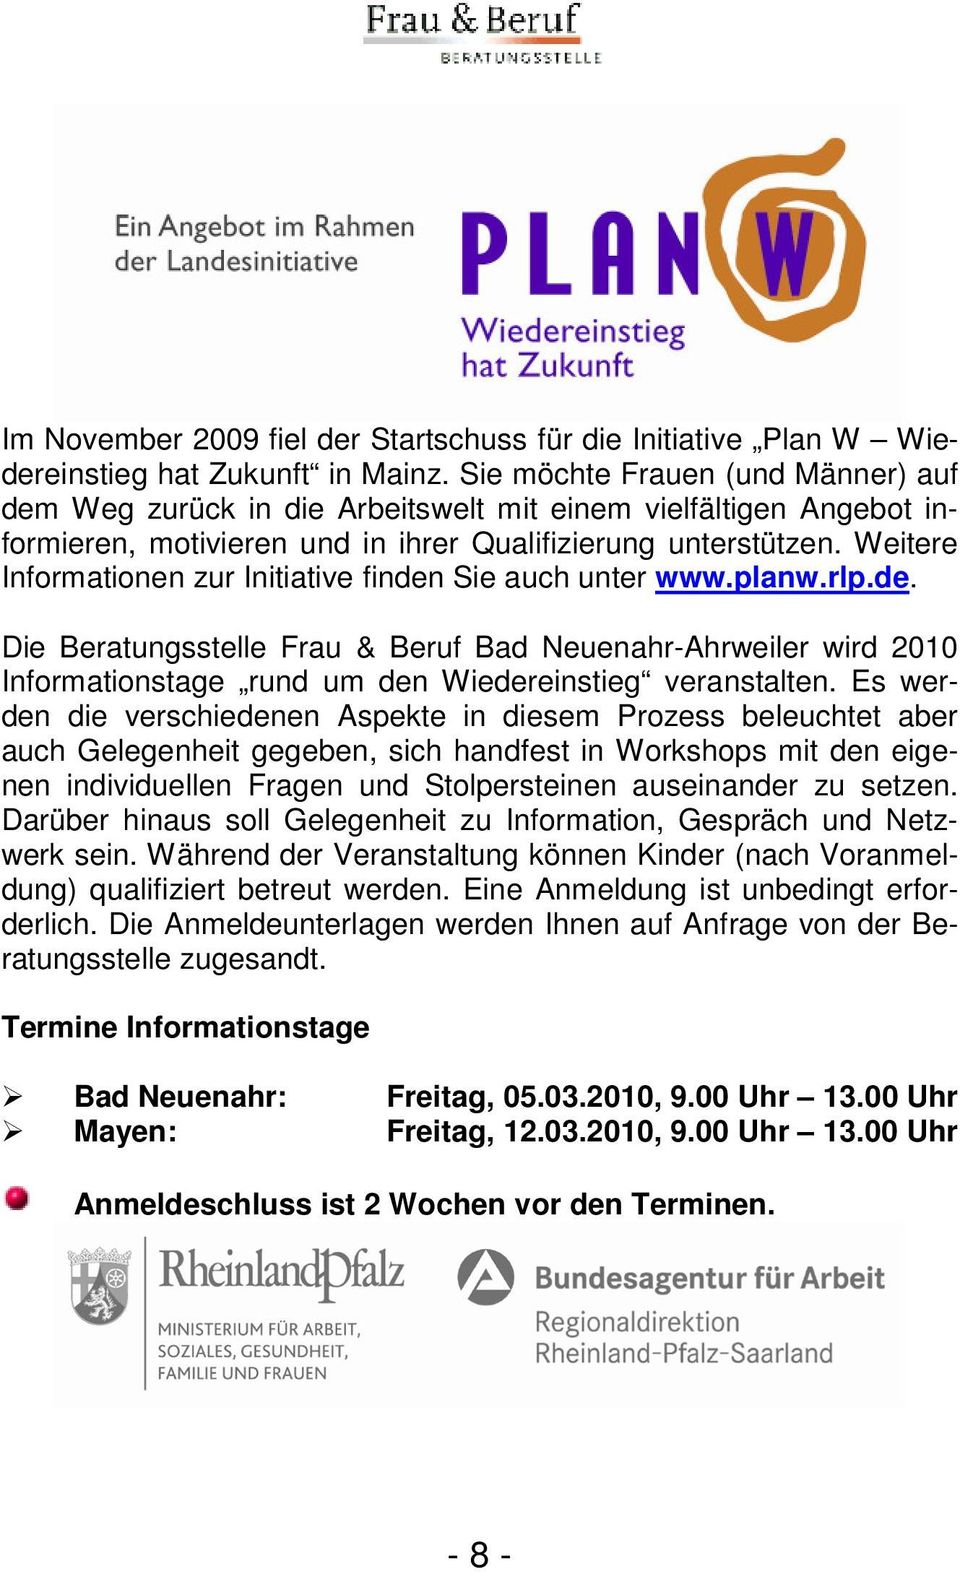 Weitere Informationen zur Initiative finden Sie auch unter www.planw.rlp.de. Die Beratungsstelle Frau & Beruf Bad Neuenahr-Ahrweiler wird 2010 Informationstage rund um den Wiedereinstieg veranstalten.